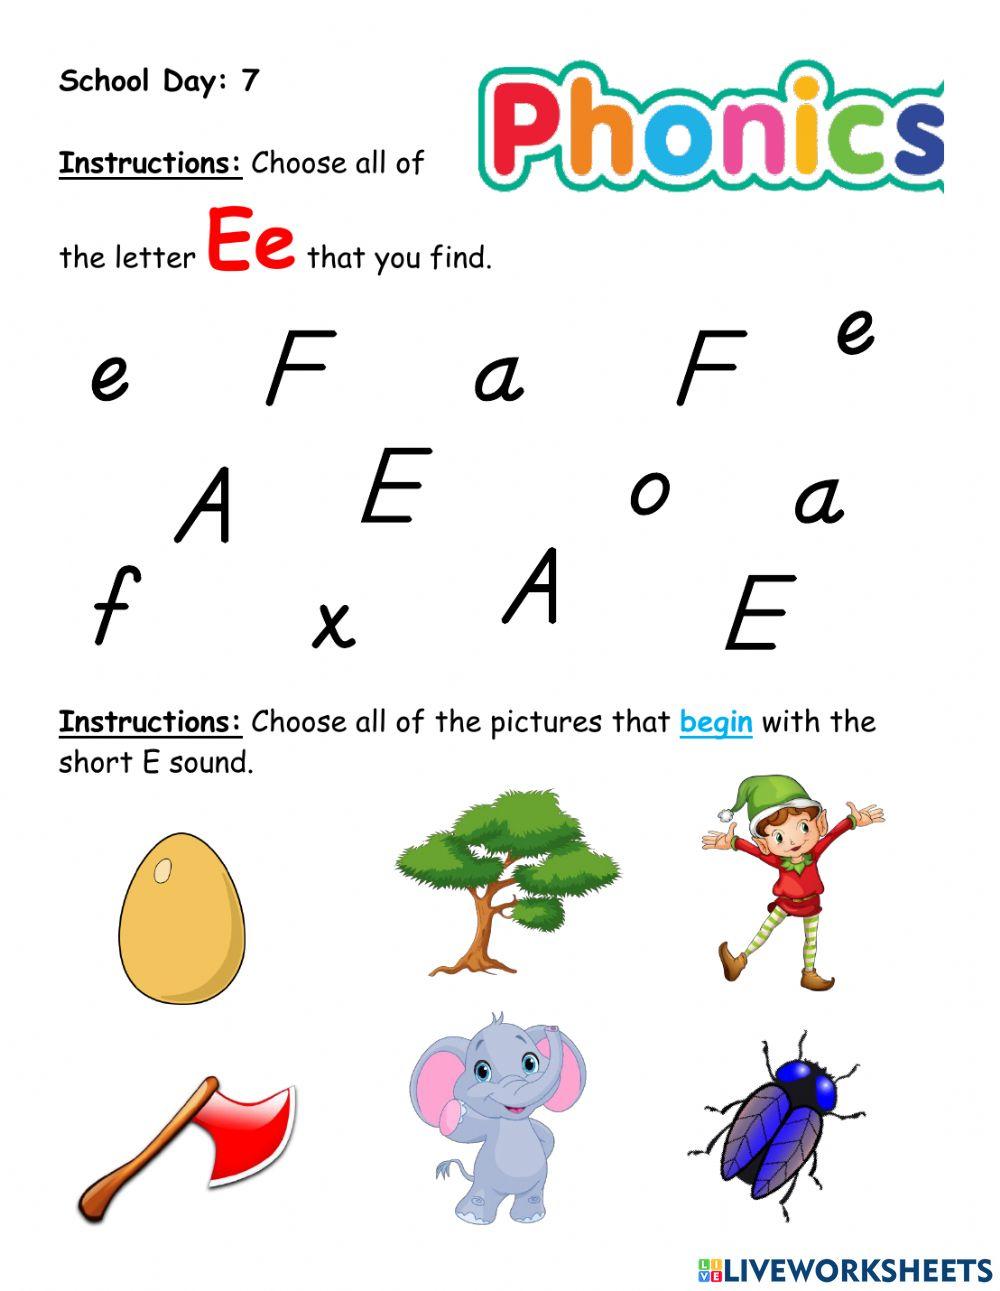 Letter E (beginning sound - short E)